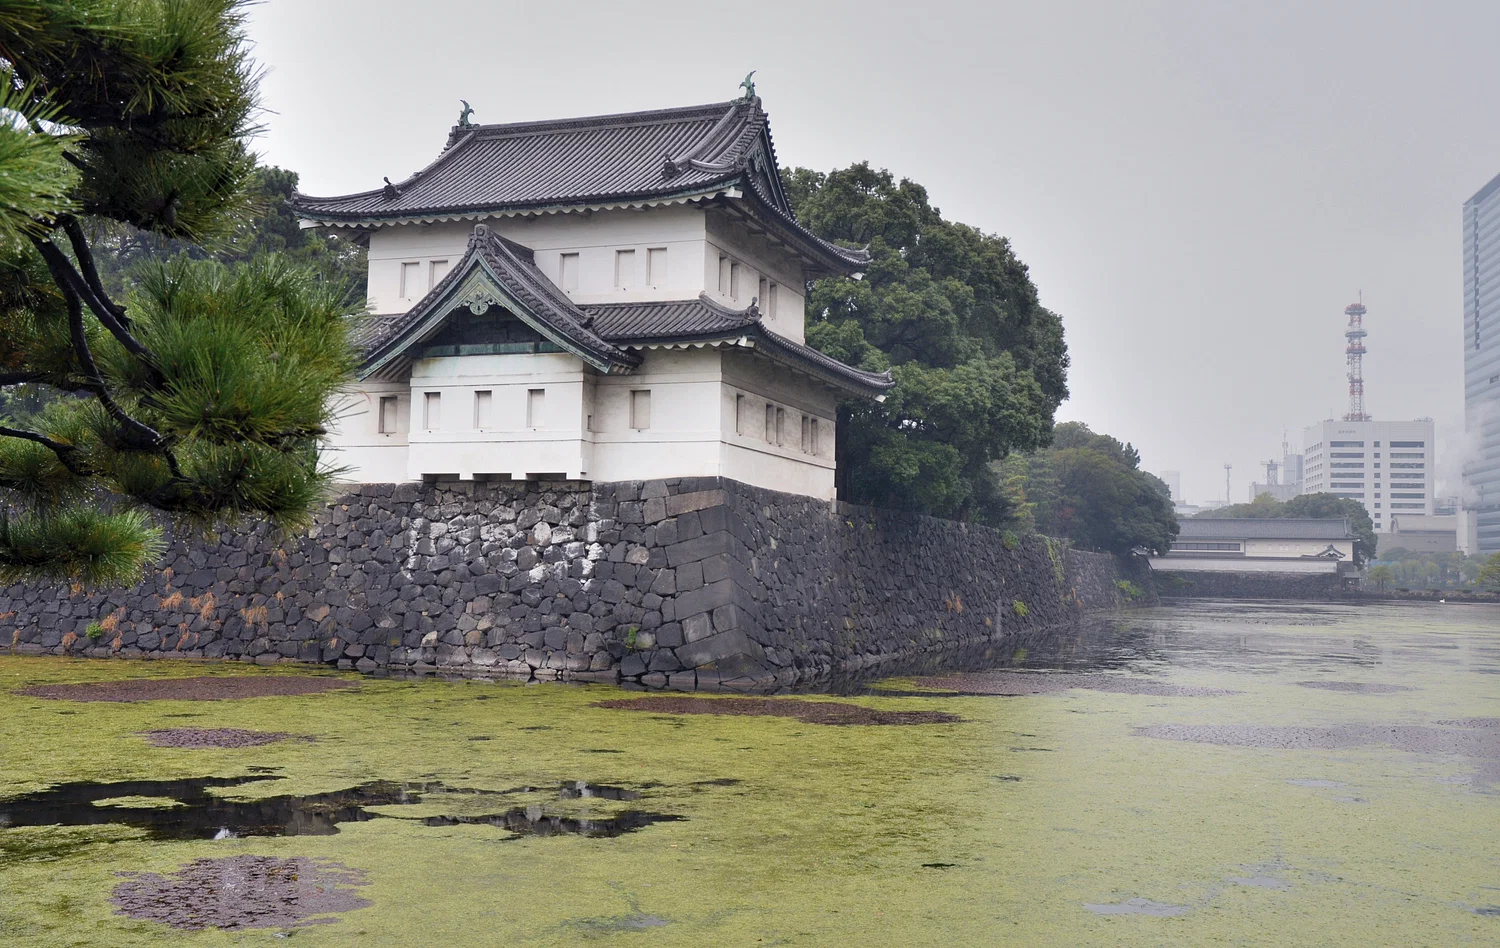 Foto de la torre de vigilancia Tatsumi-Yagura del castillo de Edo. El castillo de Edo se amplió y reconstruyó continuamente a lo largo de los siglos, pero sufrió graves daños por los incendios entre los siglos XVII y XIX. El complejo es actualmente el Palacio Imperial de Tokio. Crédito: Flickr